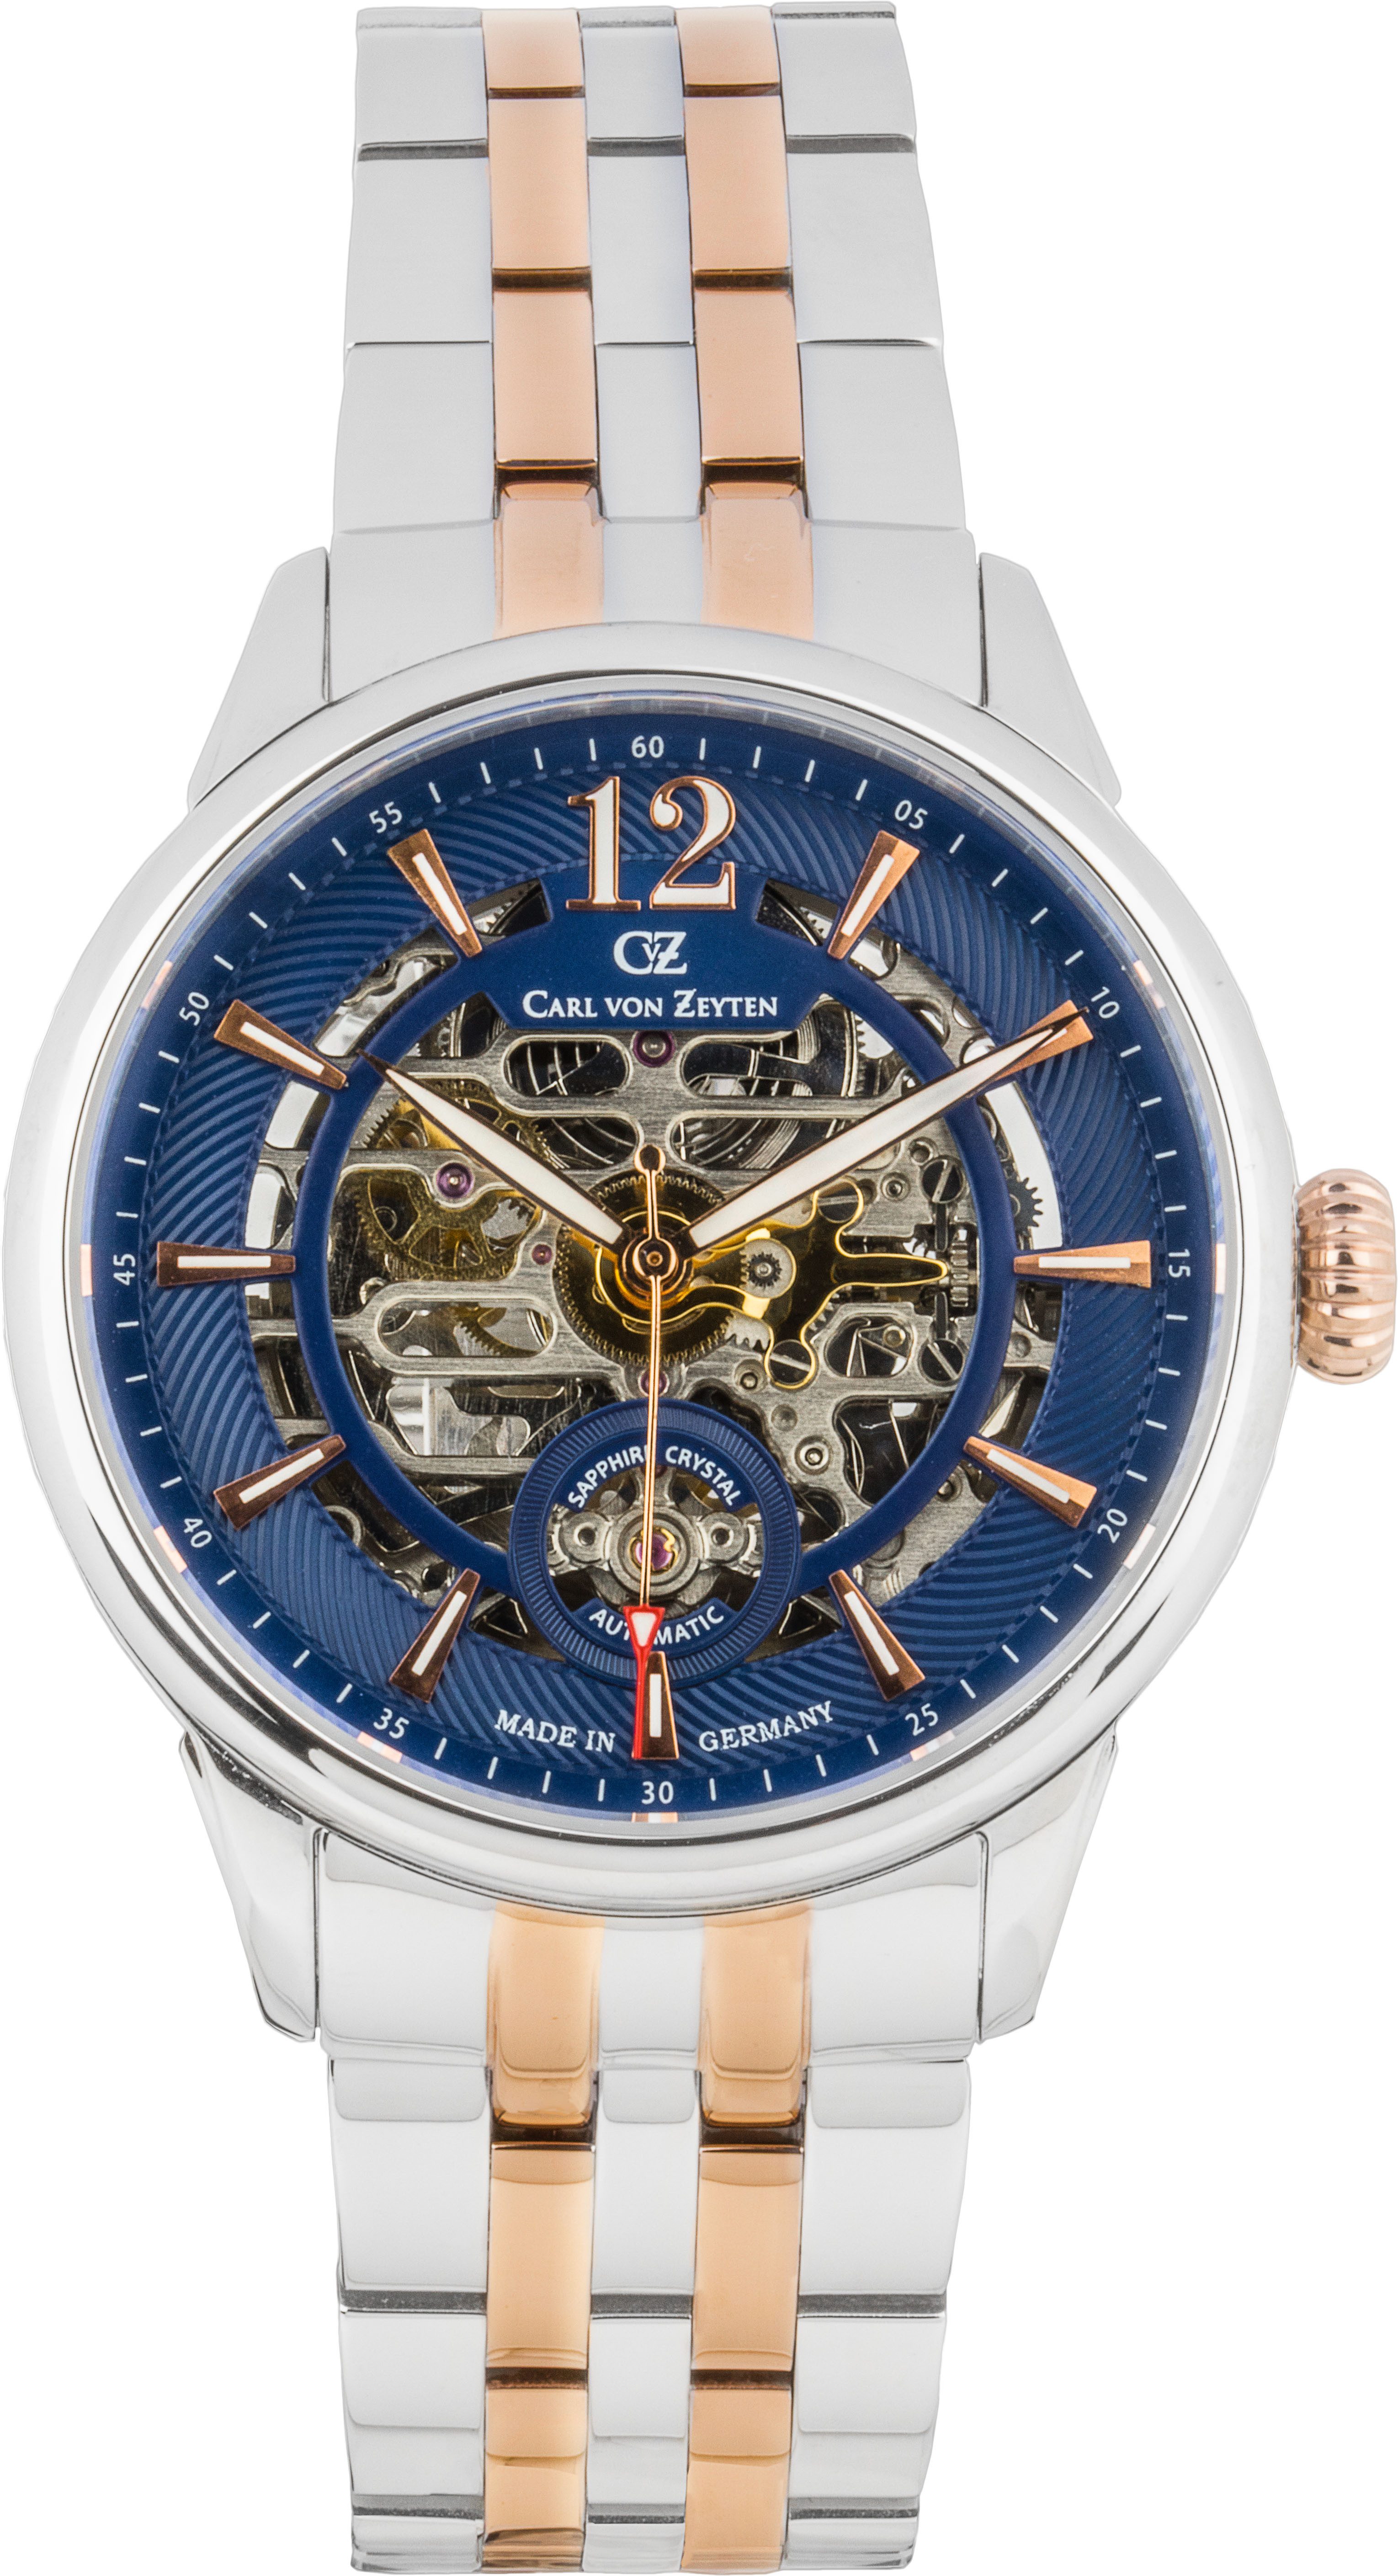 Carl von Zeyten Automatikuhr Schramberg, Armbanduhr, mechanische Uhr, Herrenuhr, bicolor, Made in Germany